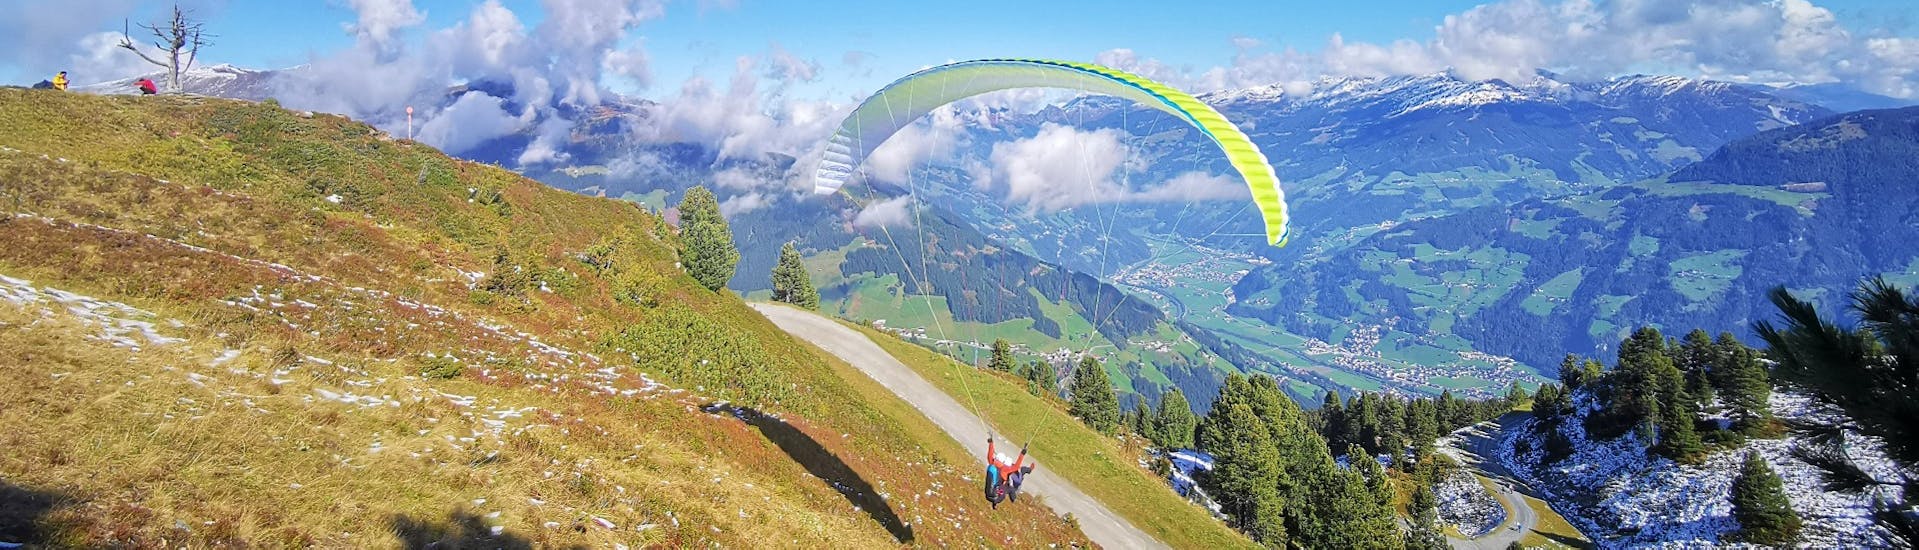 Der Pilot von AIRflow Tandem Paragliding Zillertal hebt mit dem Kunden für seinen gebuchten Tandem Paragliding Premium Flug in einer schönen Sommerlandschaft ab.